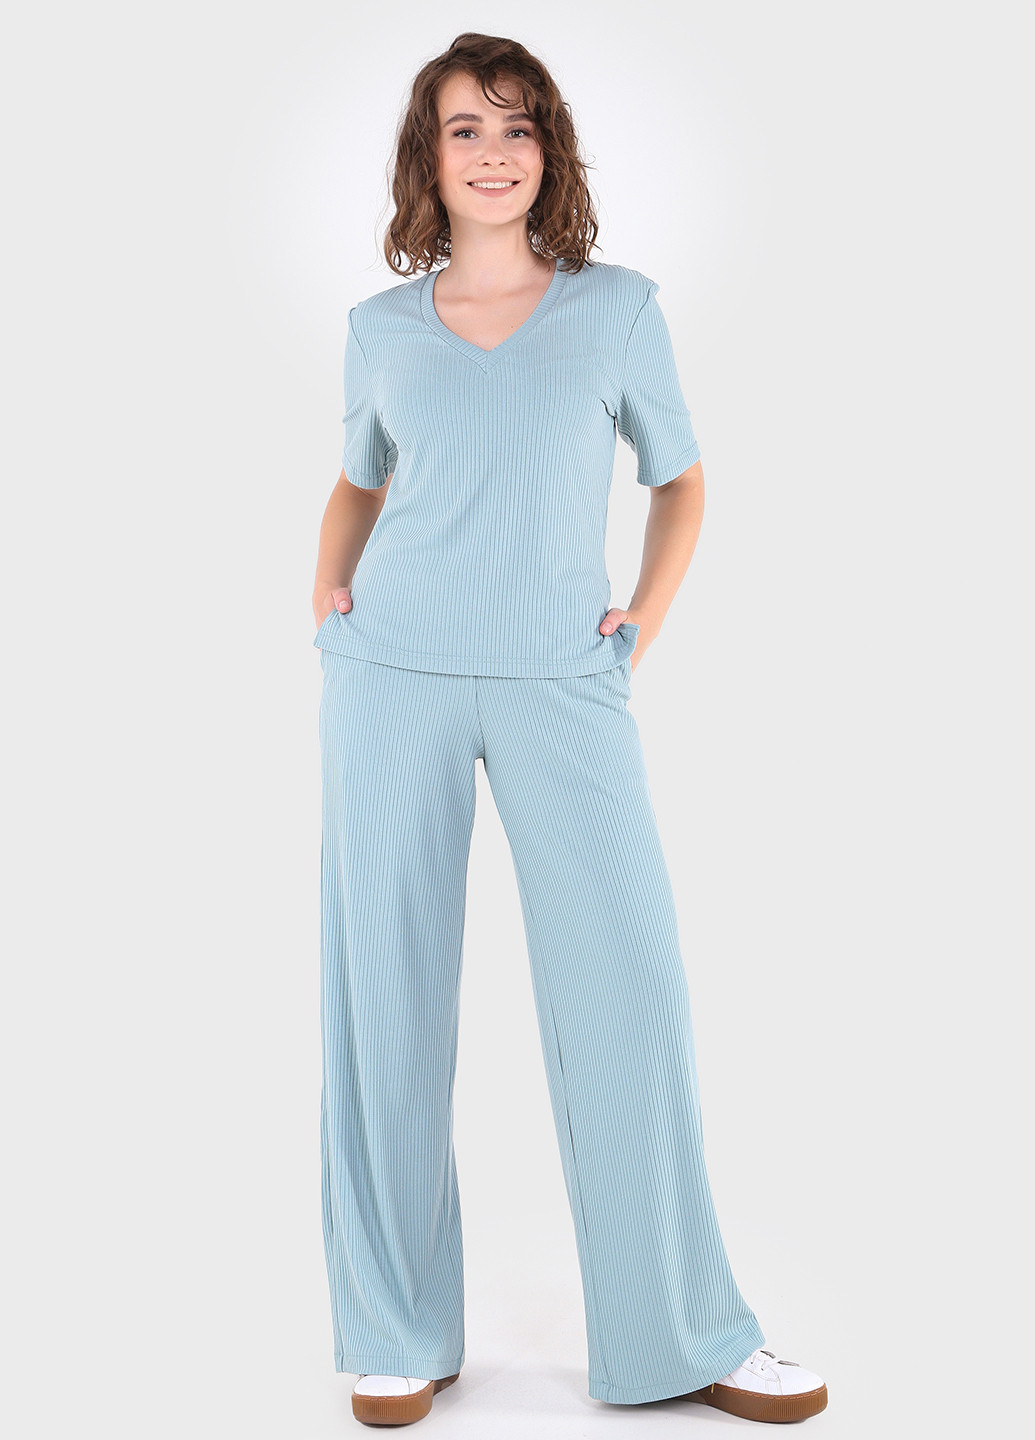 Жіночі брюки кльош у рубчик блакитного кольору Амаранті 600000068 Merlini амаранти (257533378)